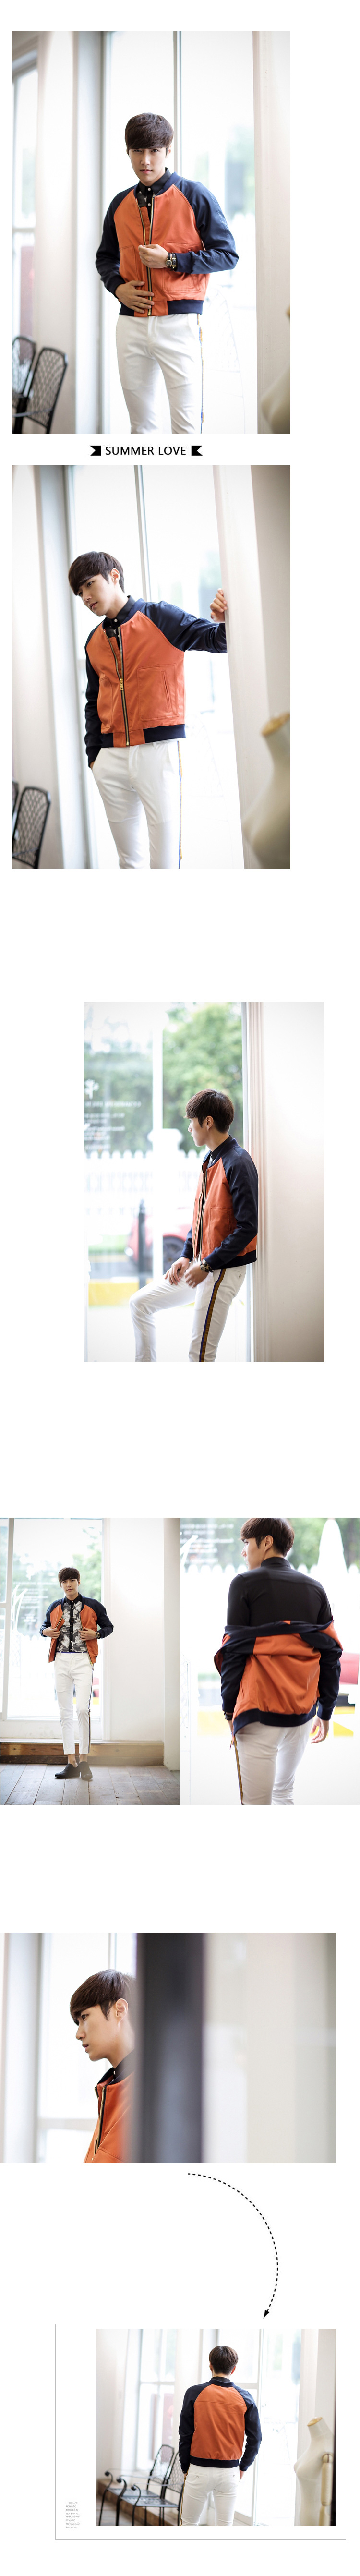 mssefn2014秋冬新巴黎时装周走秀系列插肩袖设计男士拼色夹克1801-JK56